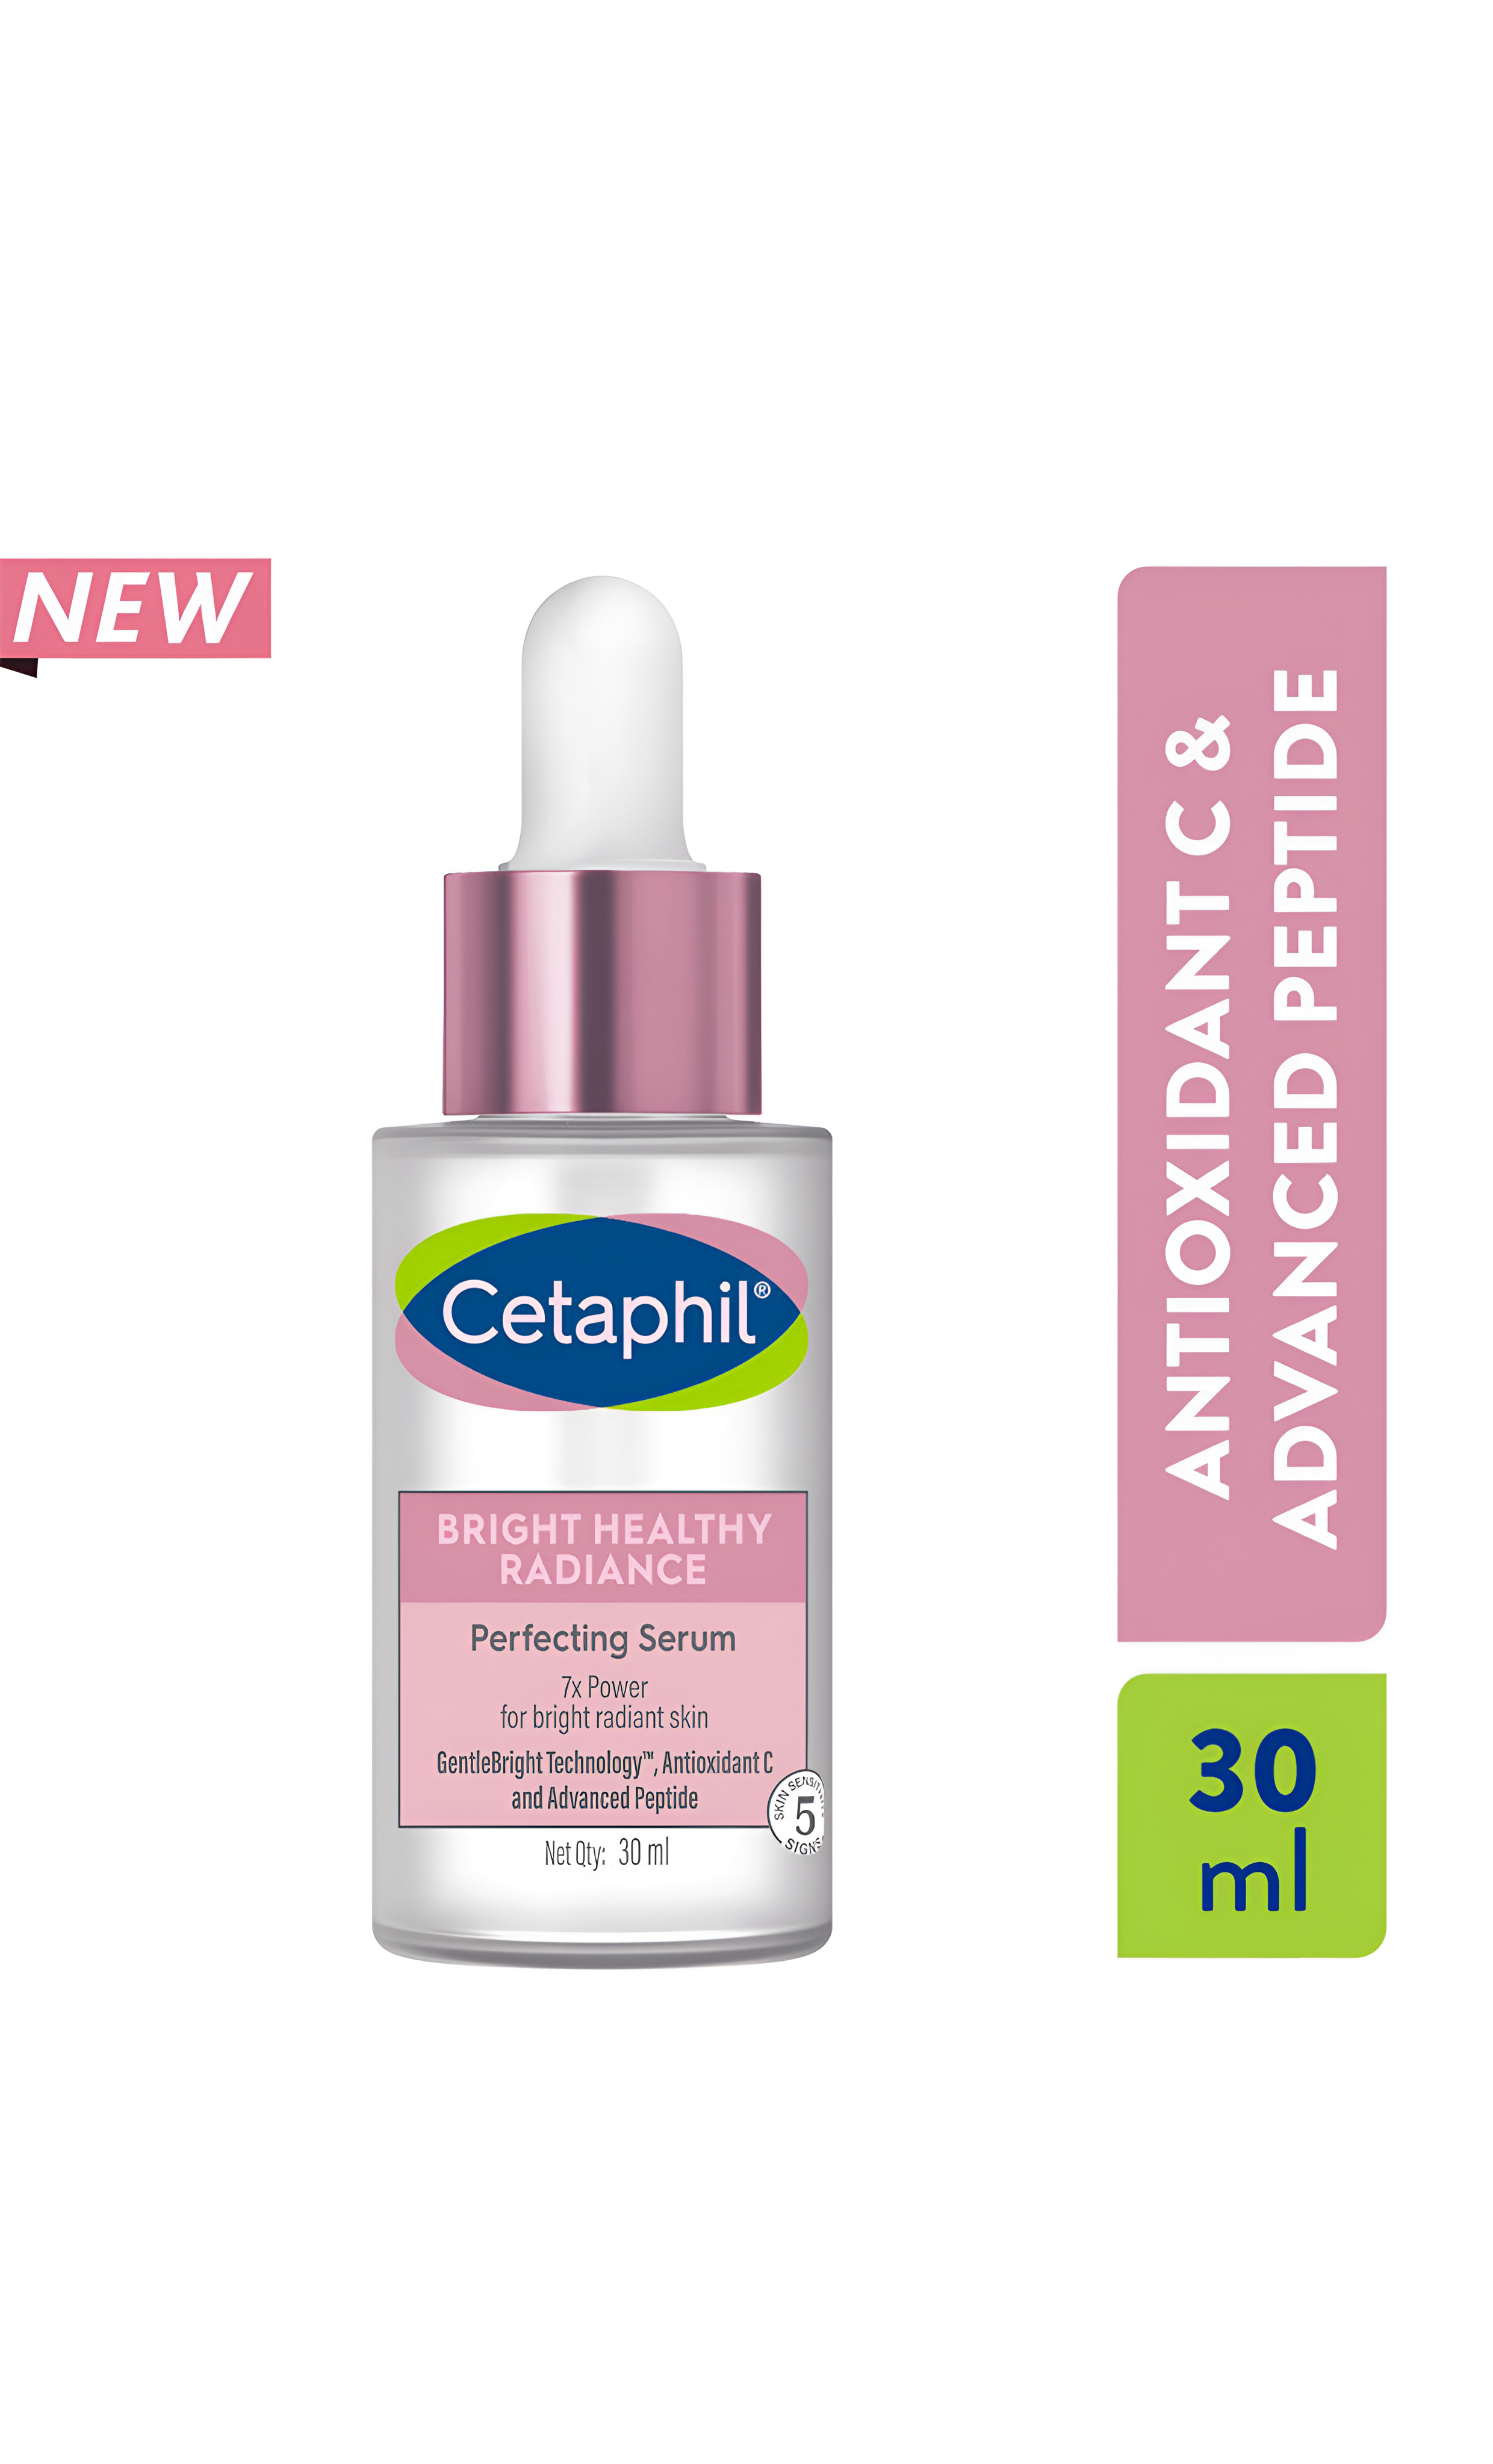 Cetaphil bright healthy radiance serum (30ml)